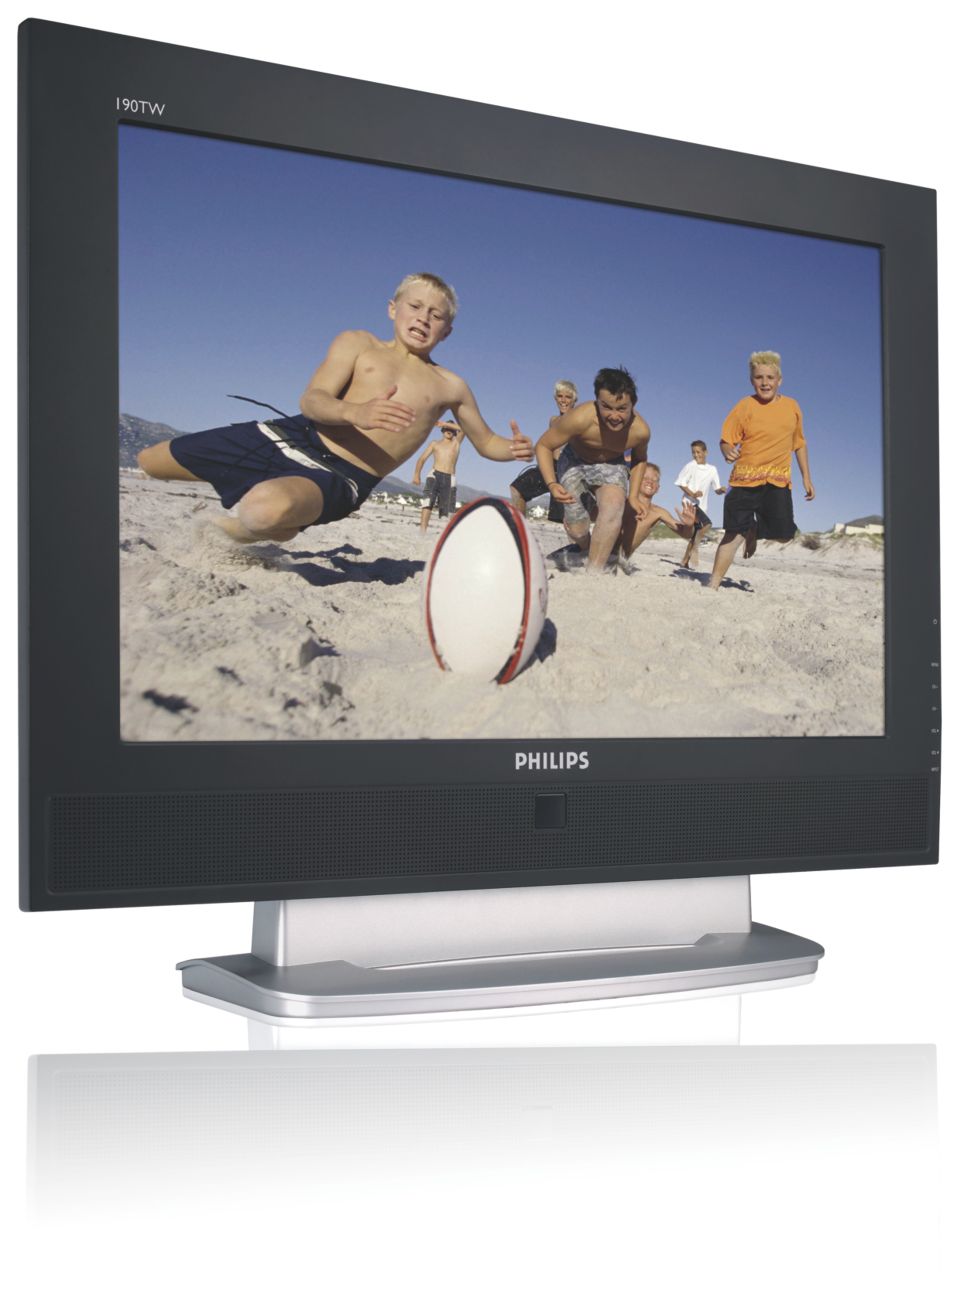 Combiné TV/moniteur LCD aux fonctionnalités complètes